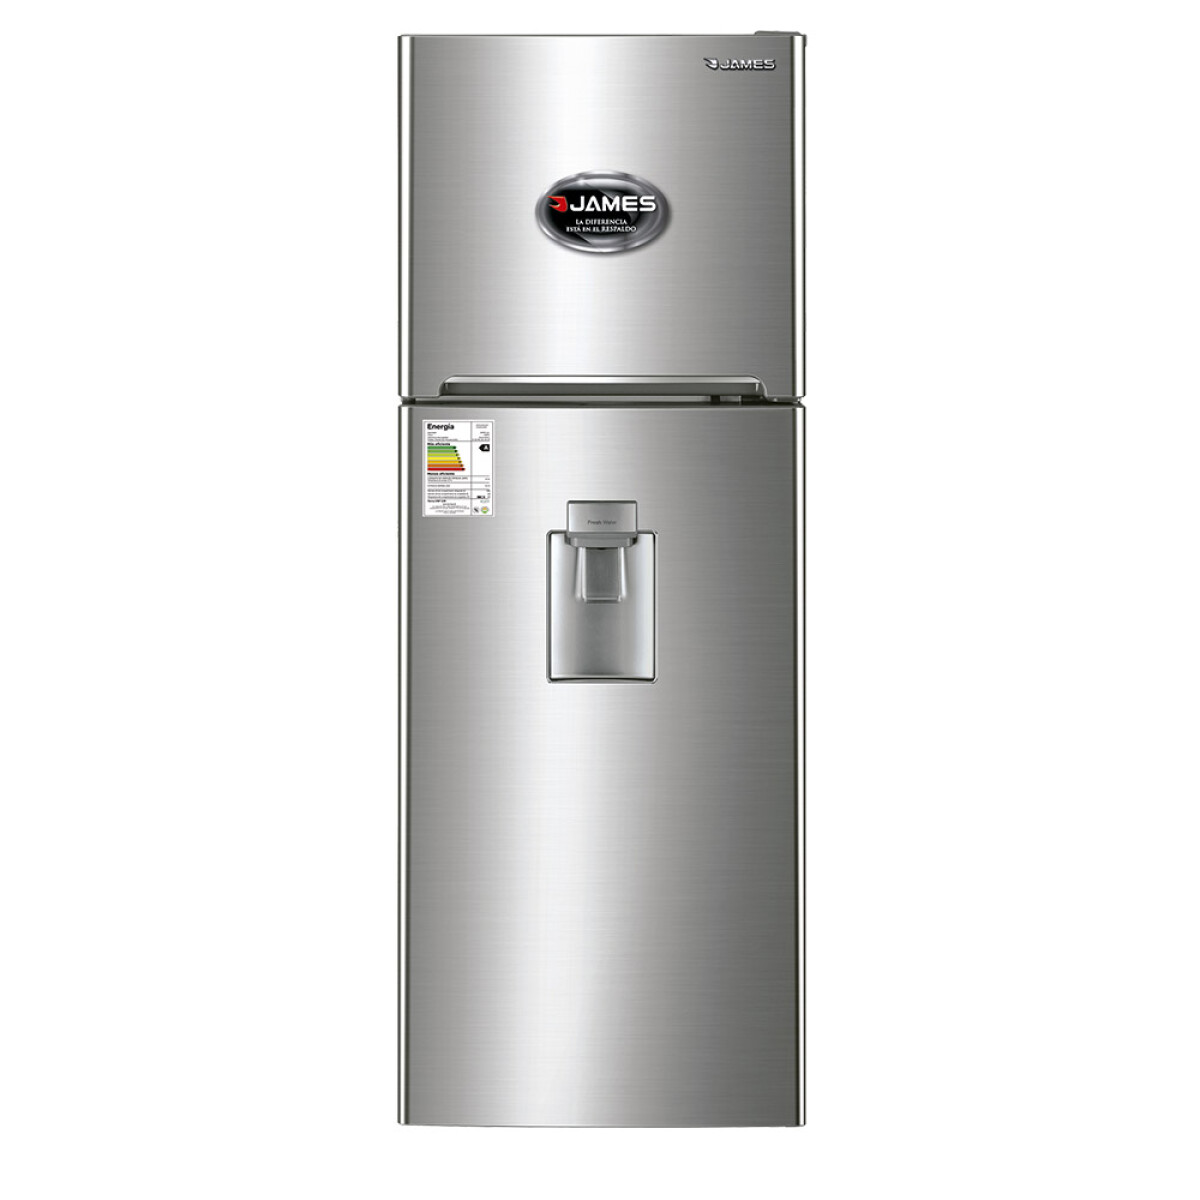 Refrigerador James c/Dispensador J-300 Inox. 